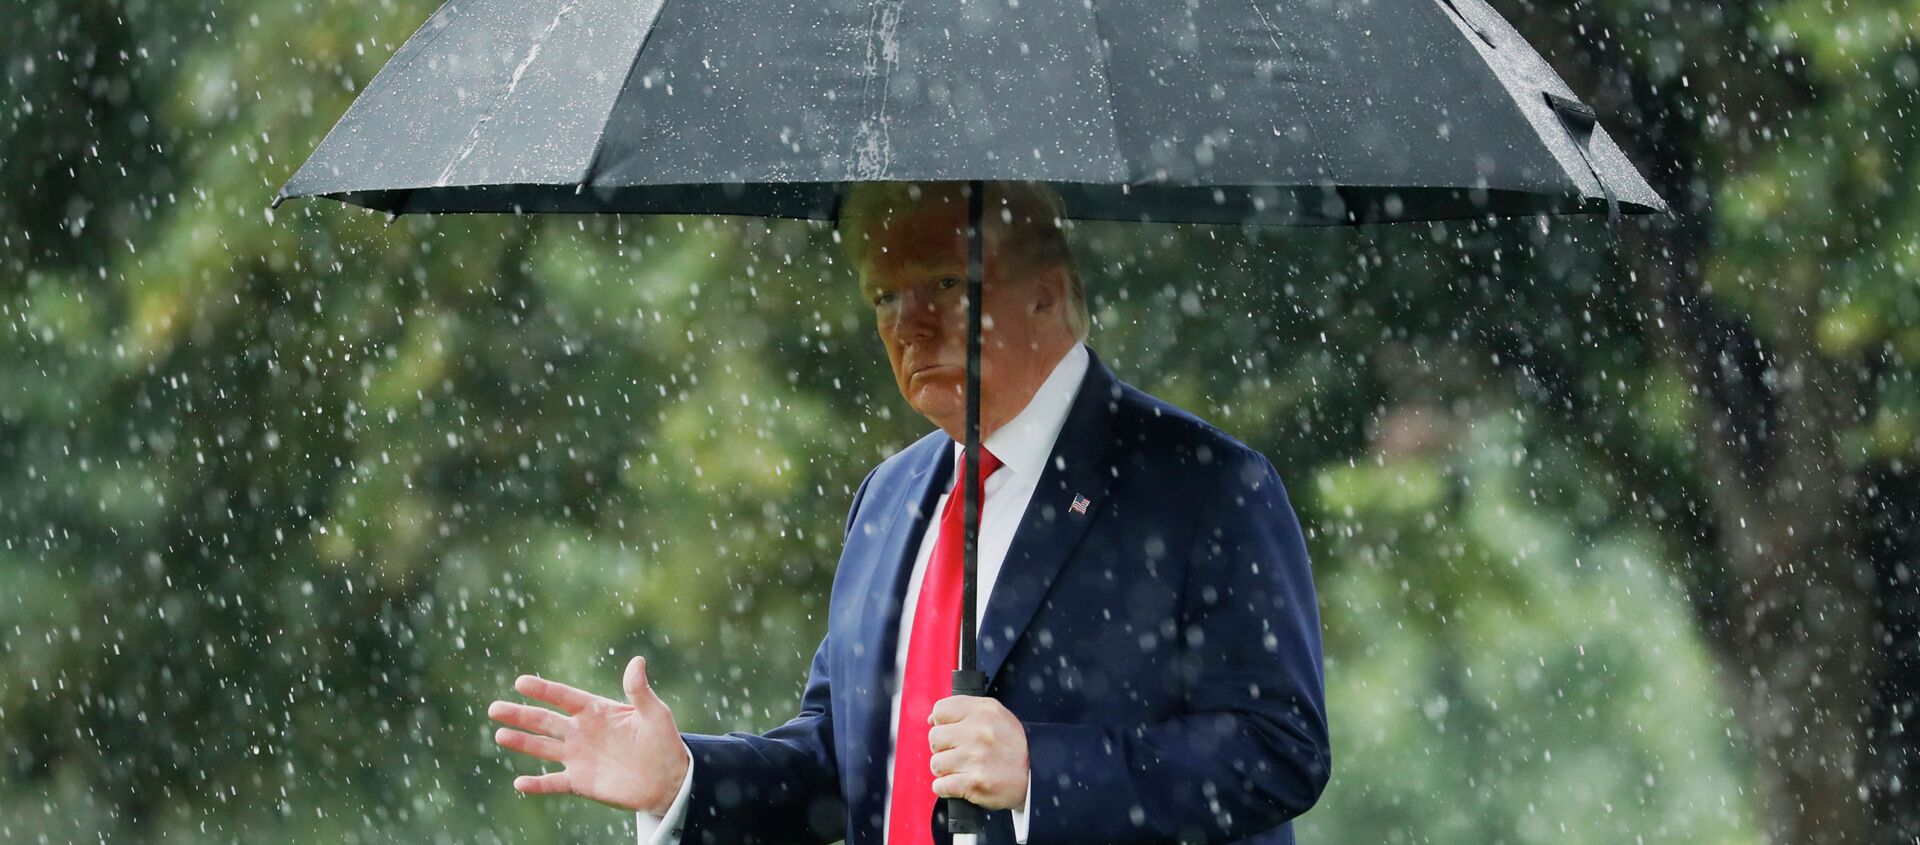 Президент США Дональд Трамп идет под зонтом во время дождя - Sputnik Казахстан, 1920, 07.08.2020